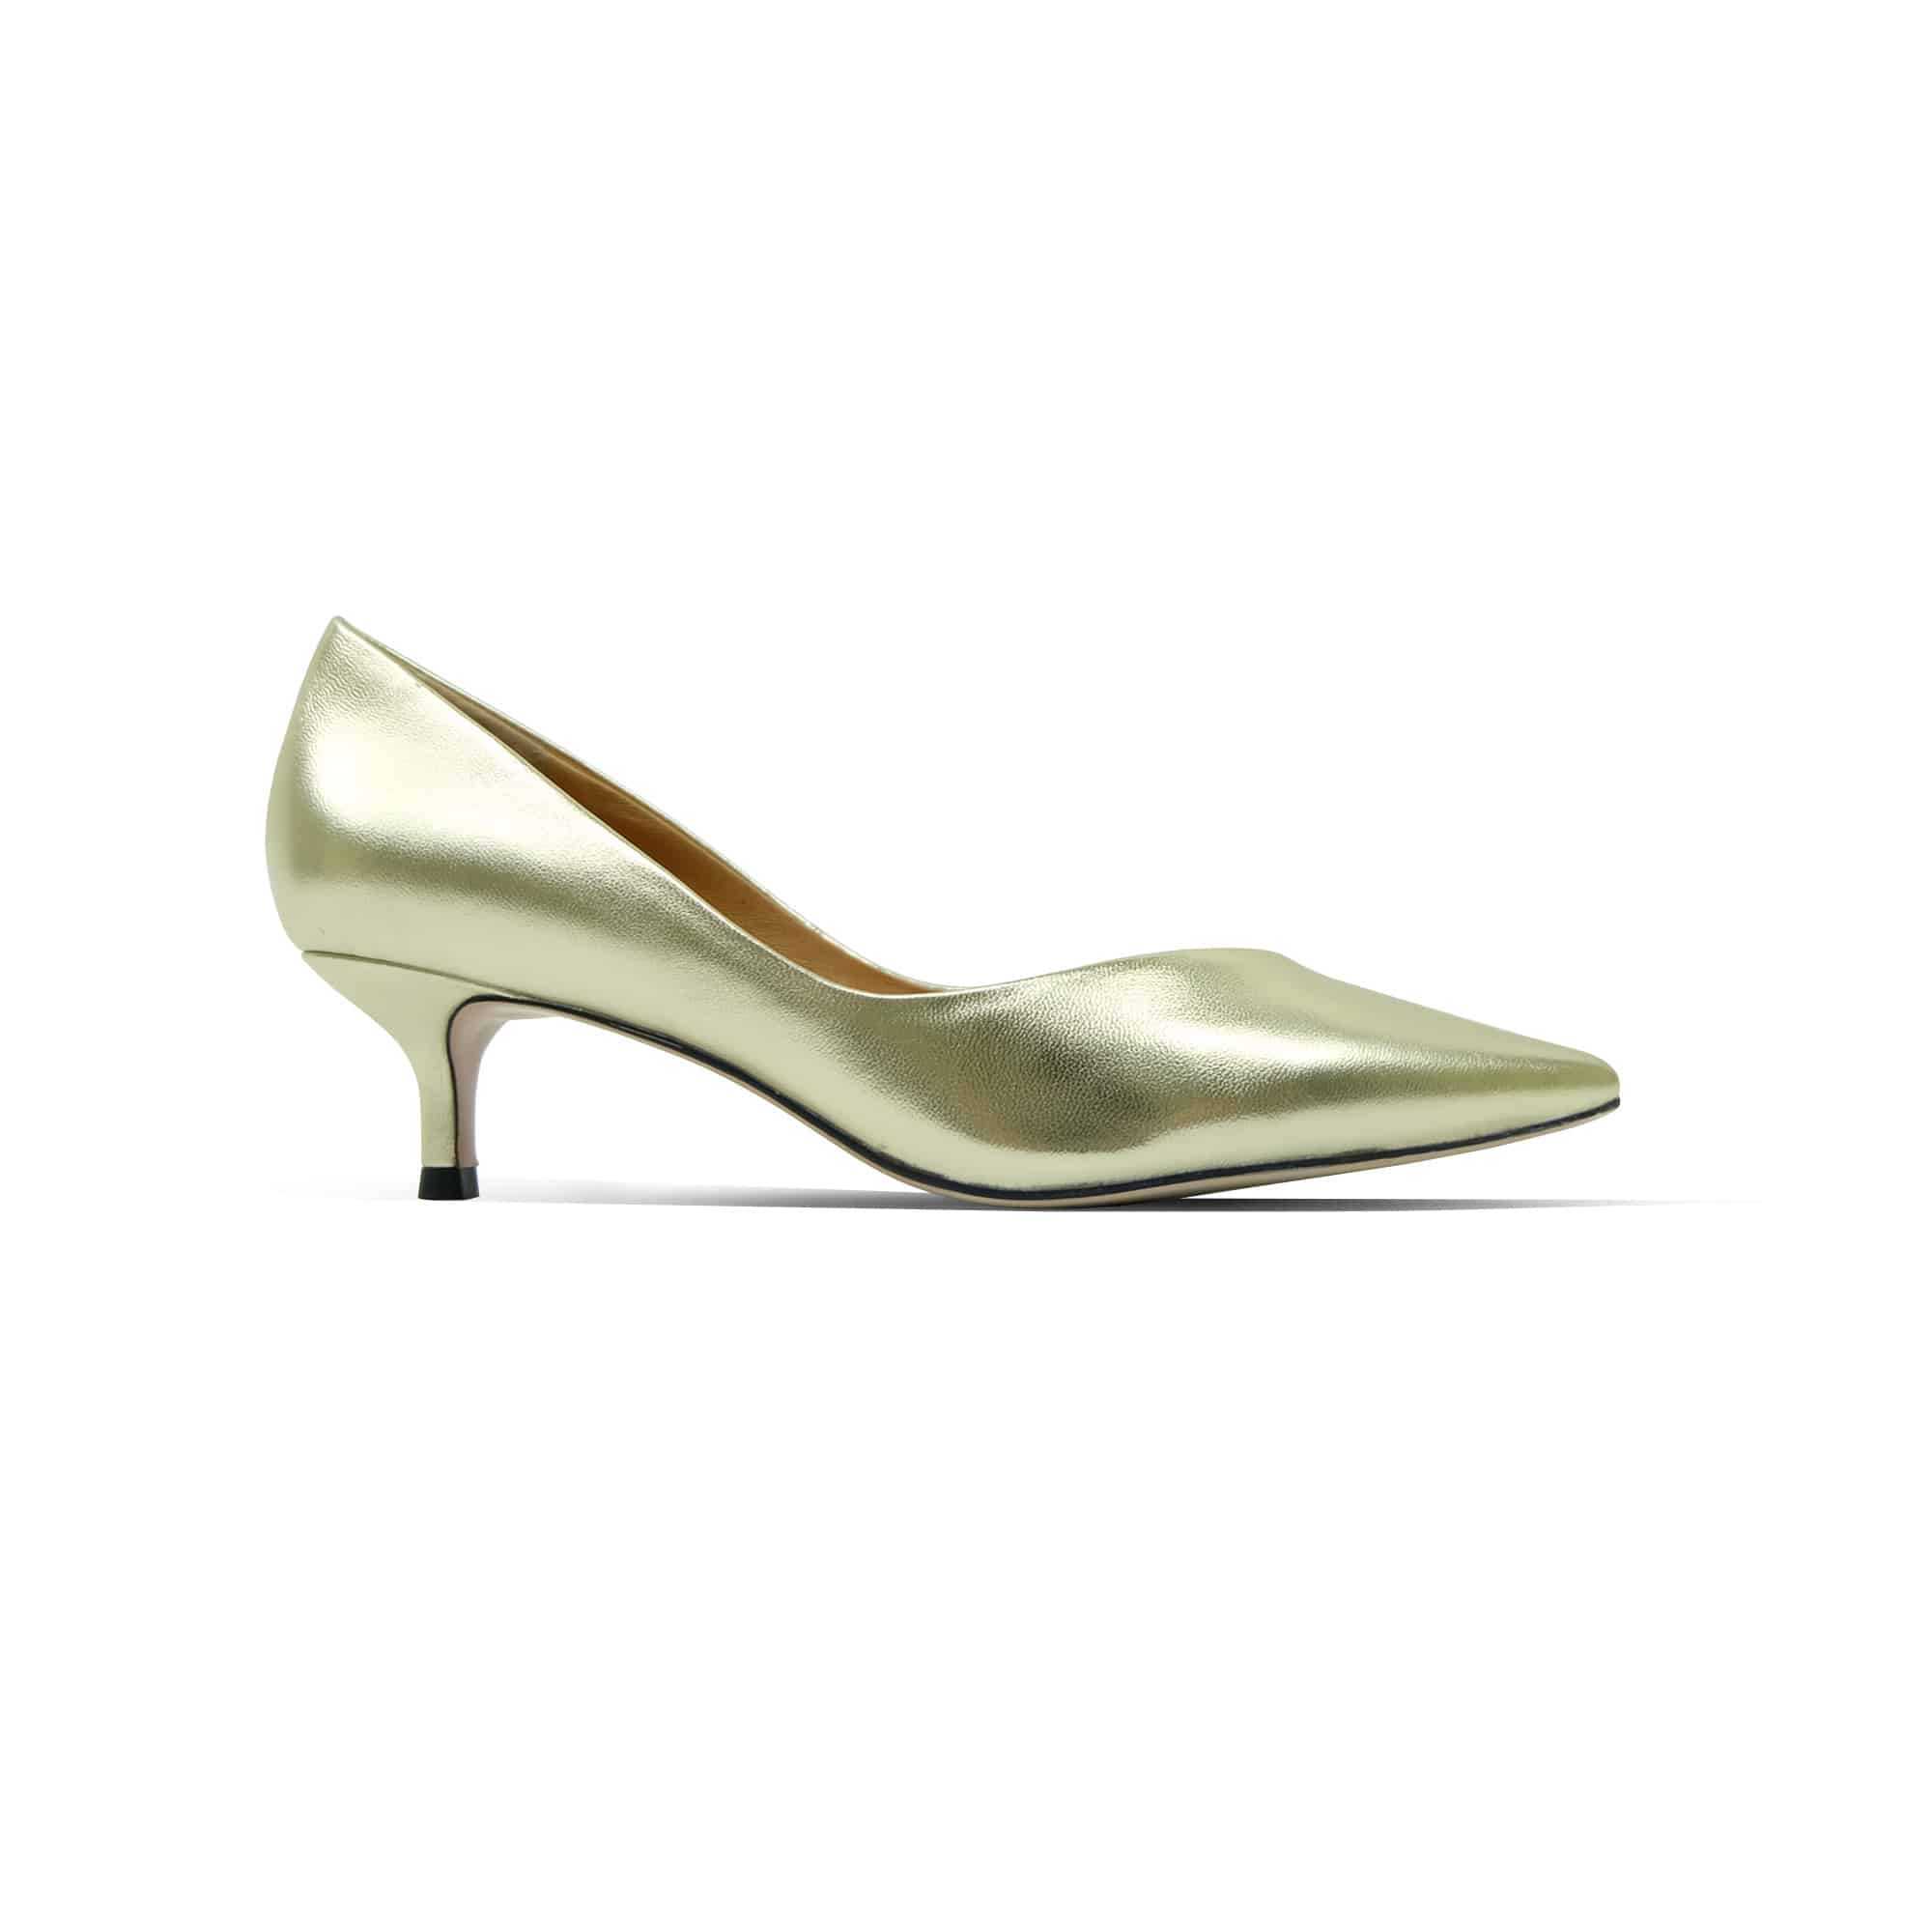 2 inch gold heels